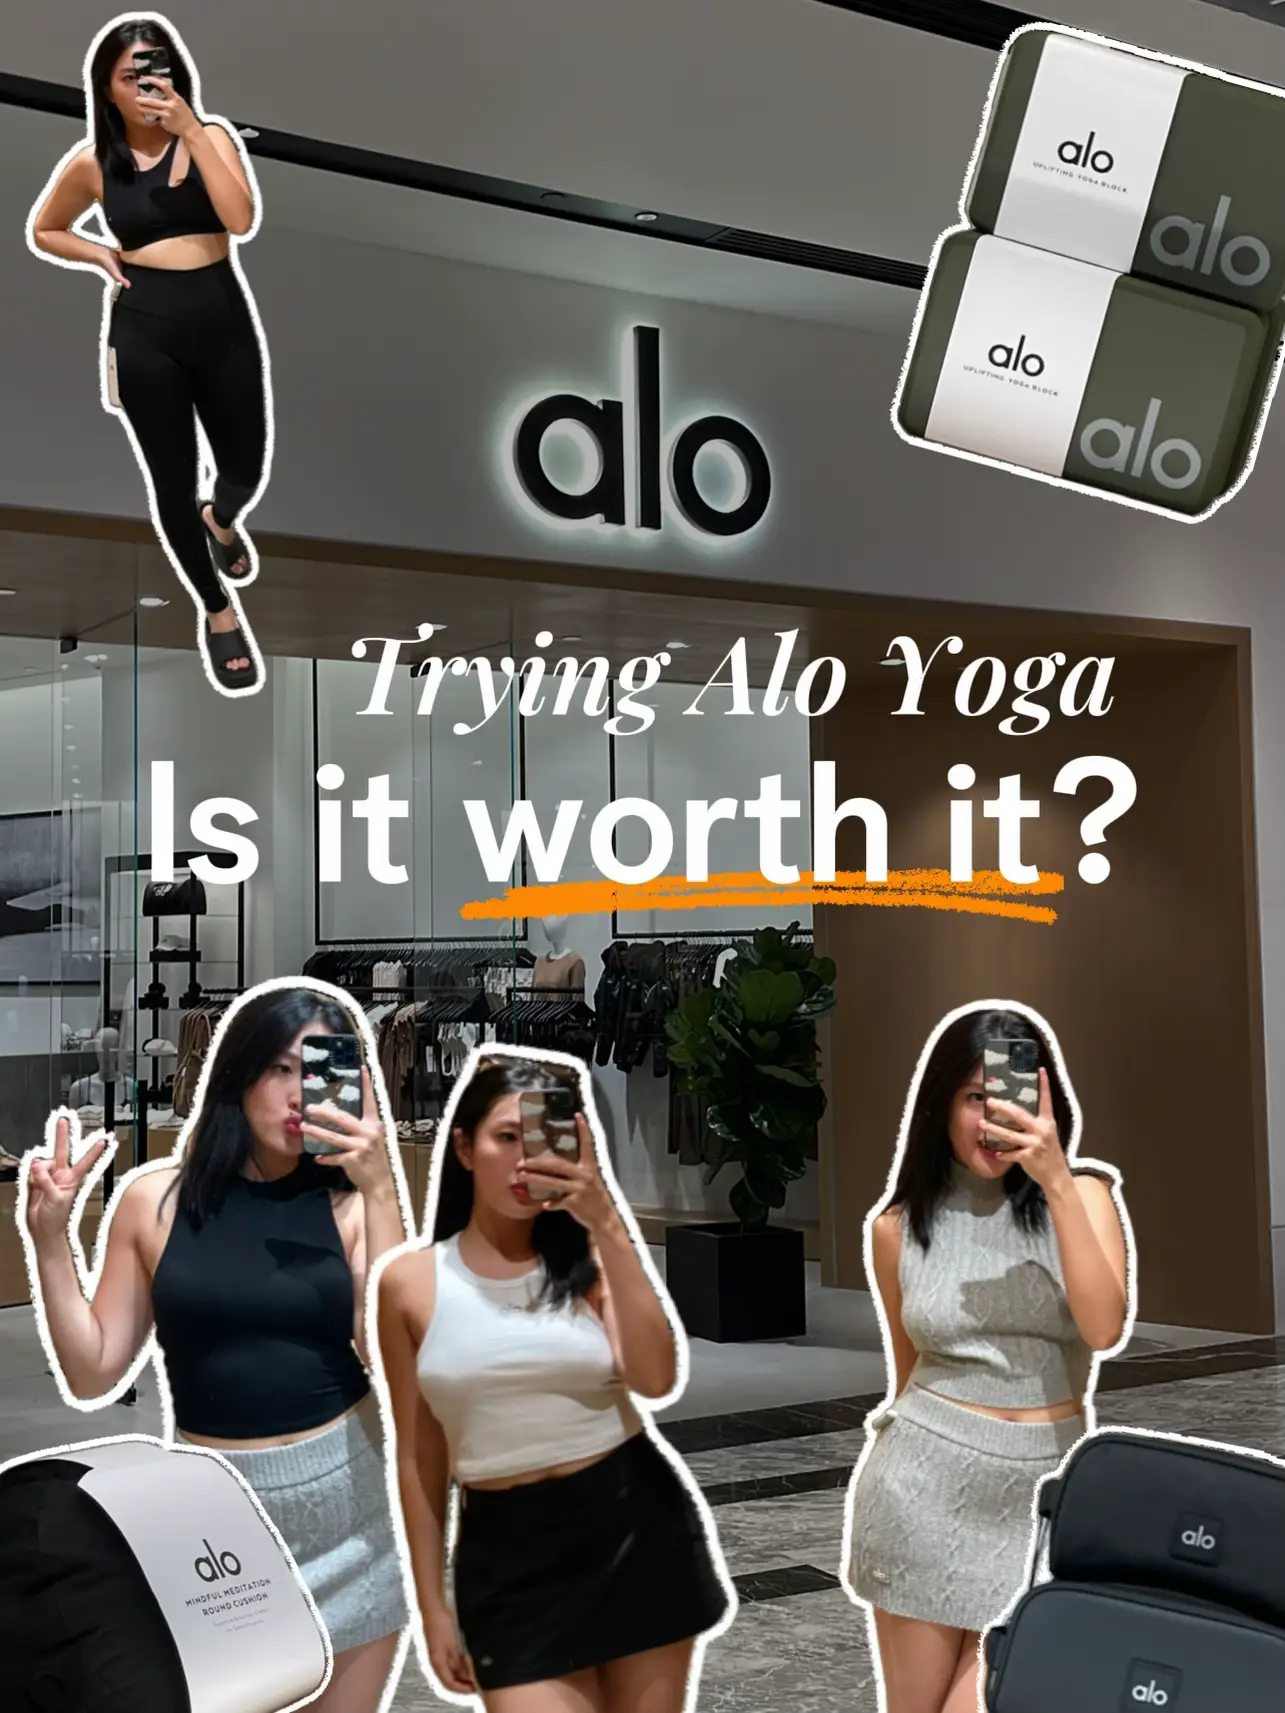 alo yoga review - Lemon8 Search